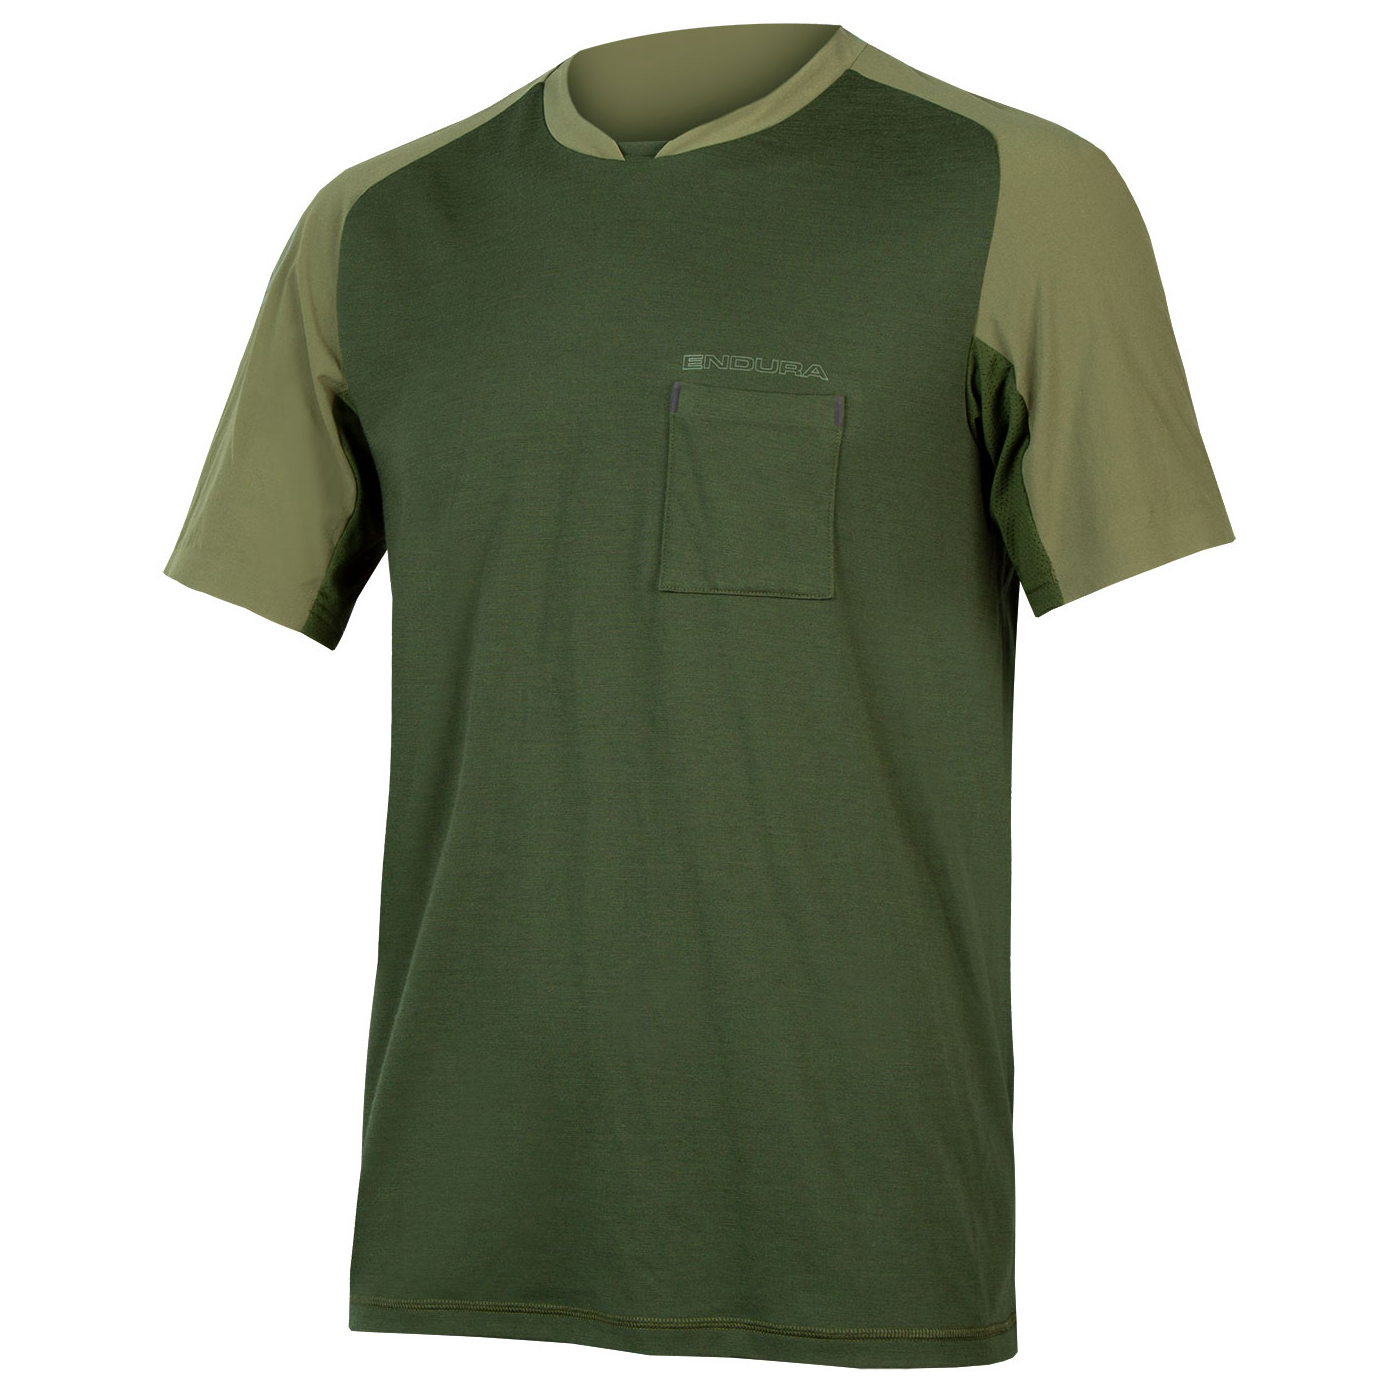 Рубашка из мериноса Endura GV500 Foyle T, цвет Olivgrün джерси с длинным рукавом endura gv500 фиолетовый